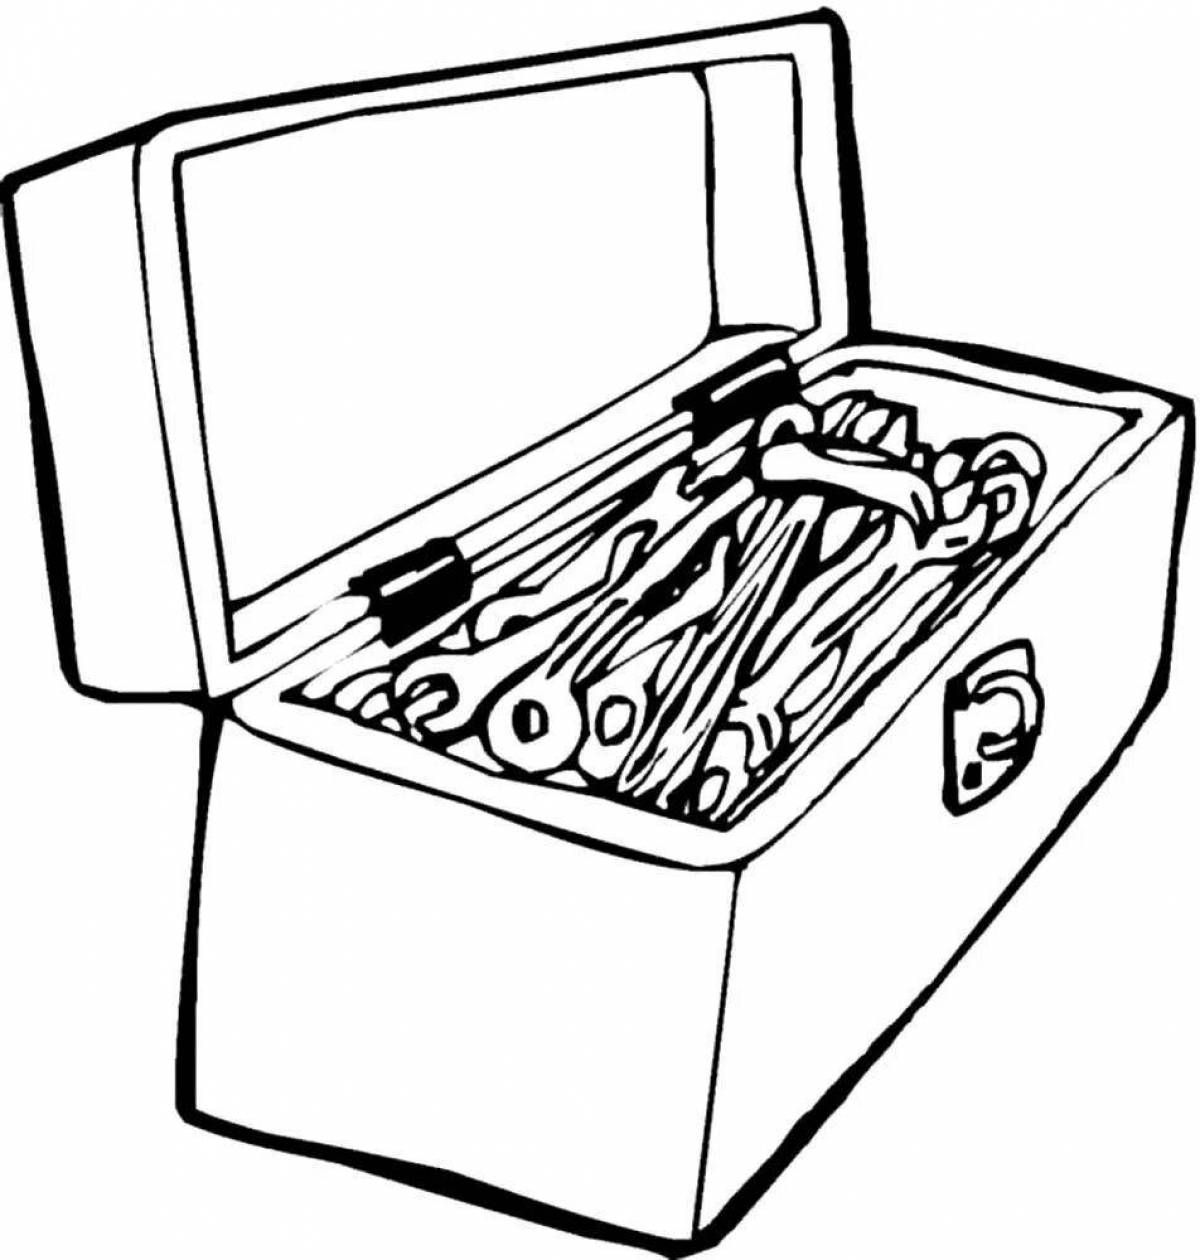 Magic toolbox coloring page